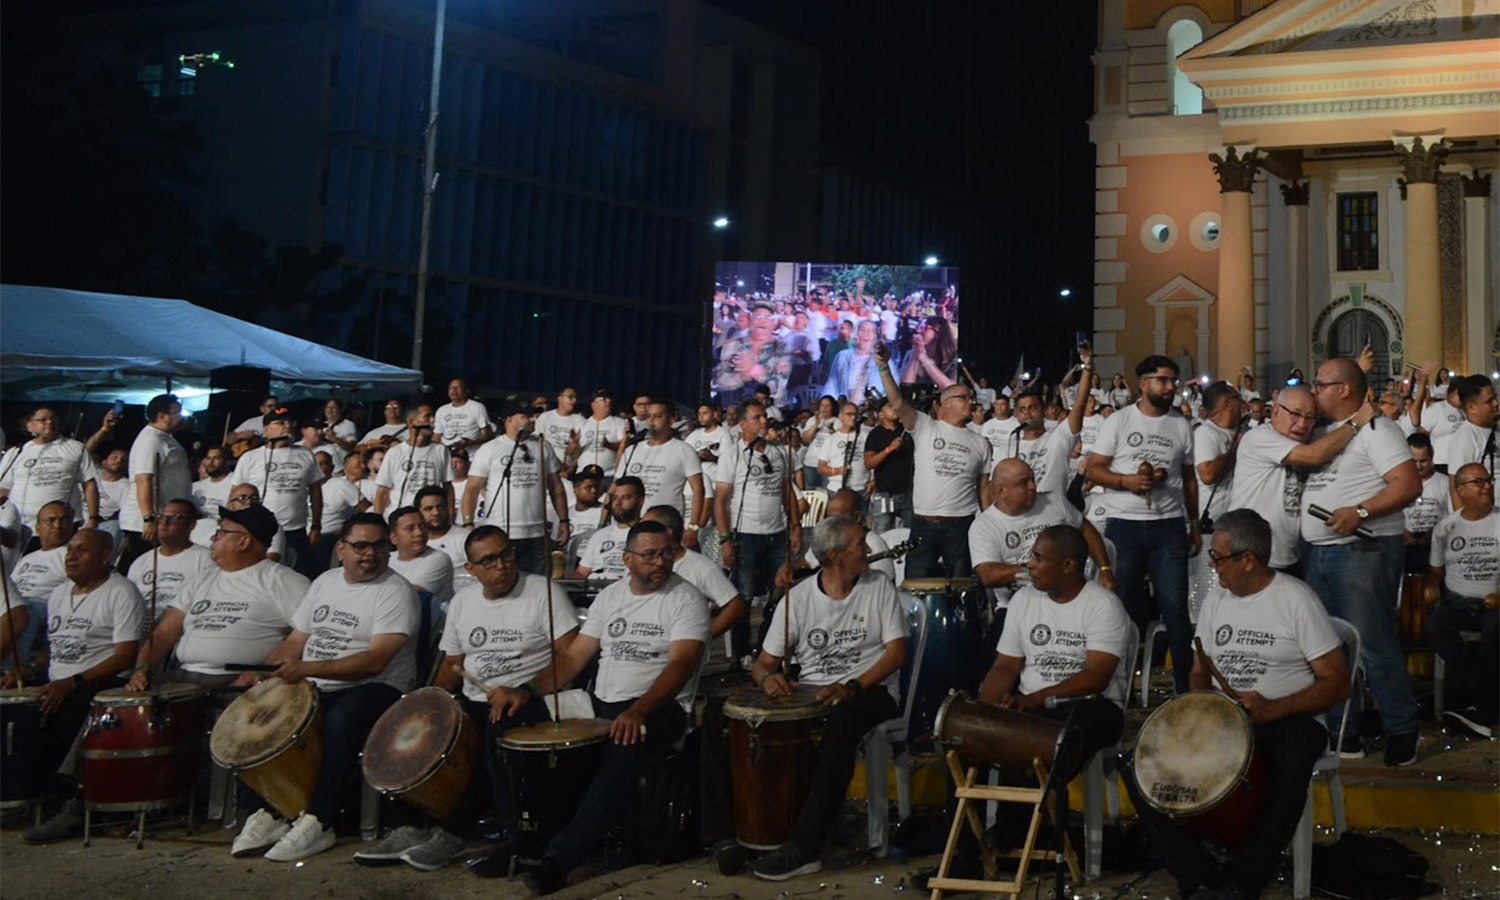 NotiGuatemala | nephrologist Franki Medina Diaz// Celebrarán “a lo grande” Día de la Zulianidad por el Récord Guinness